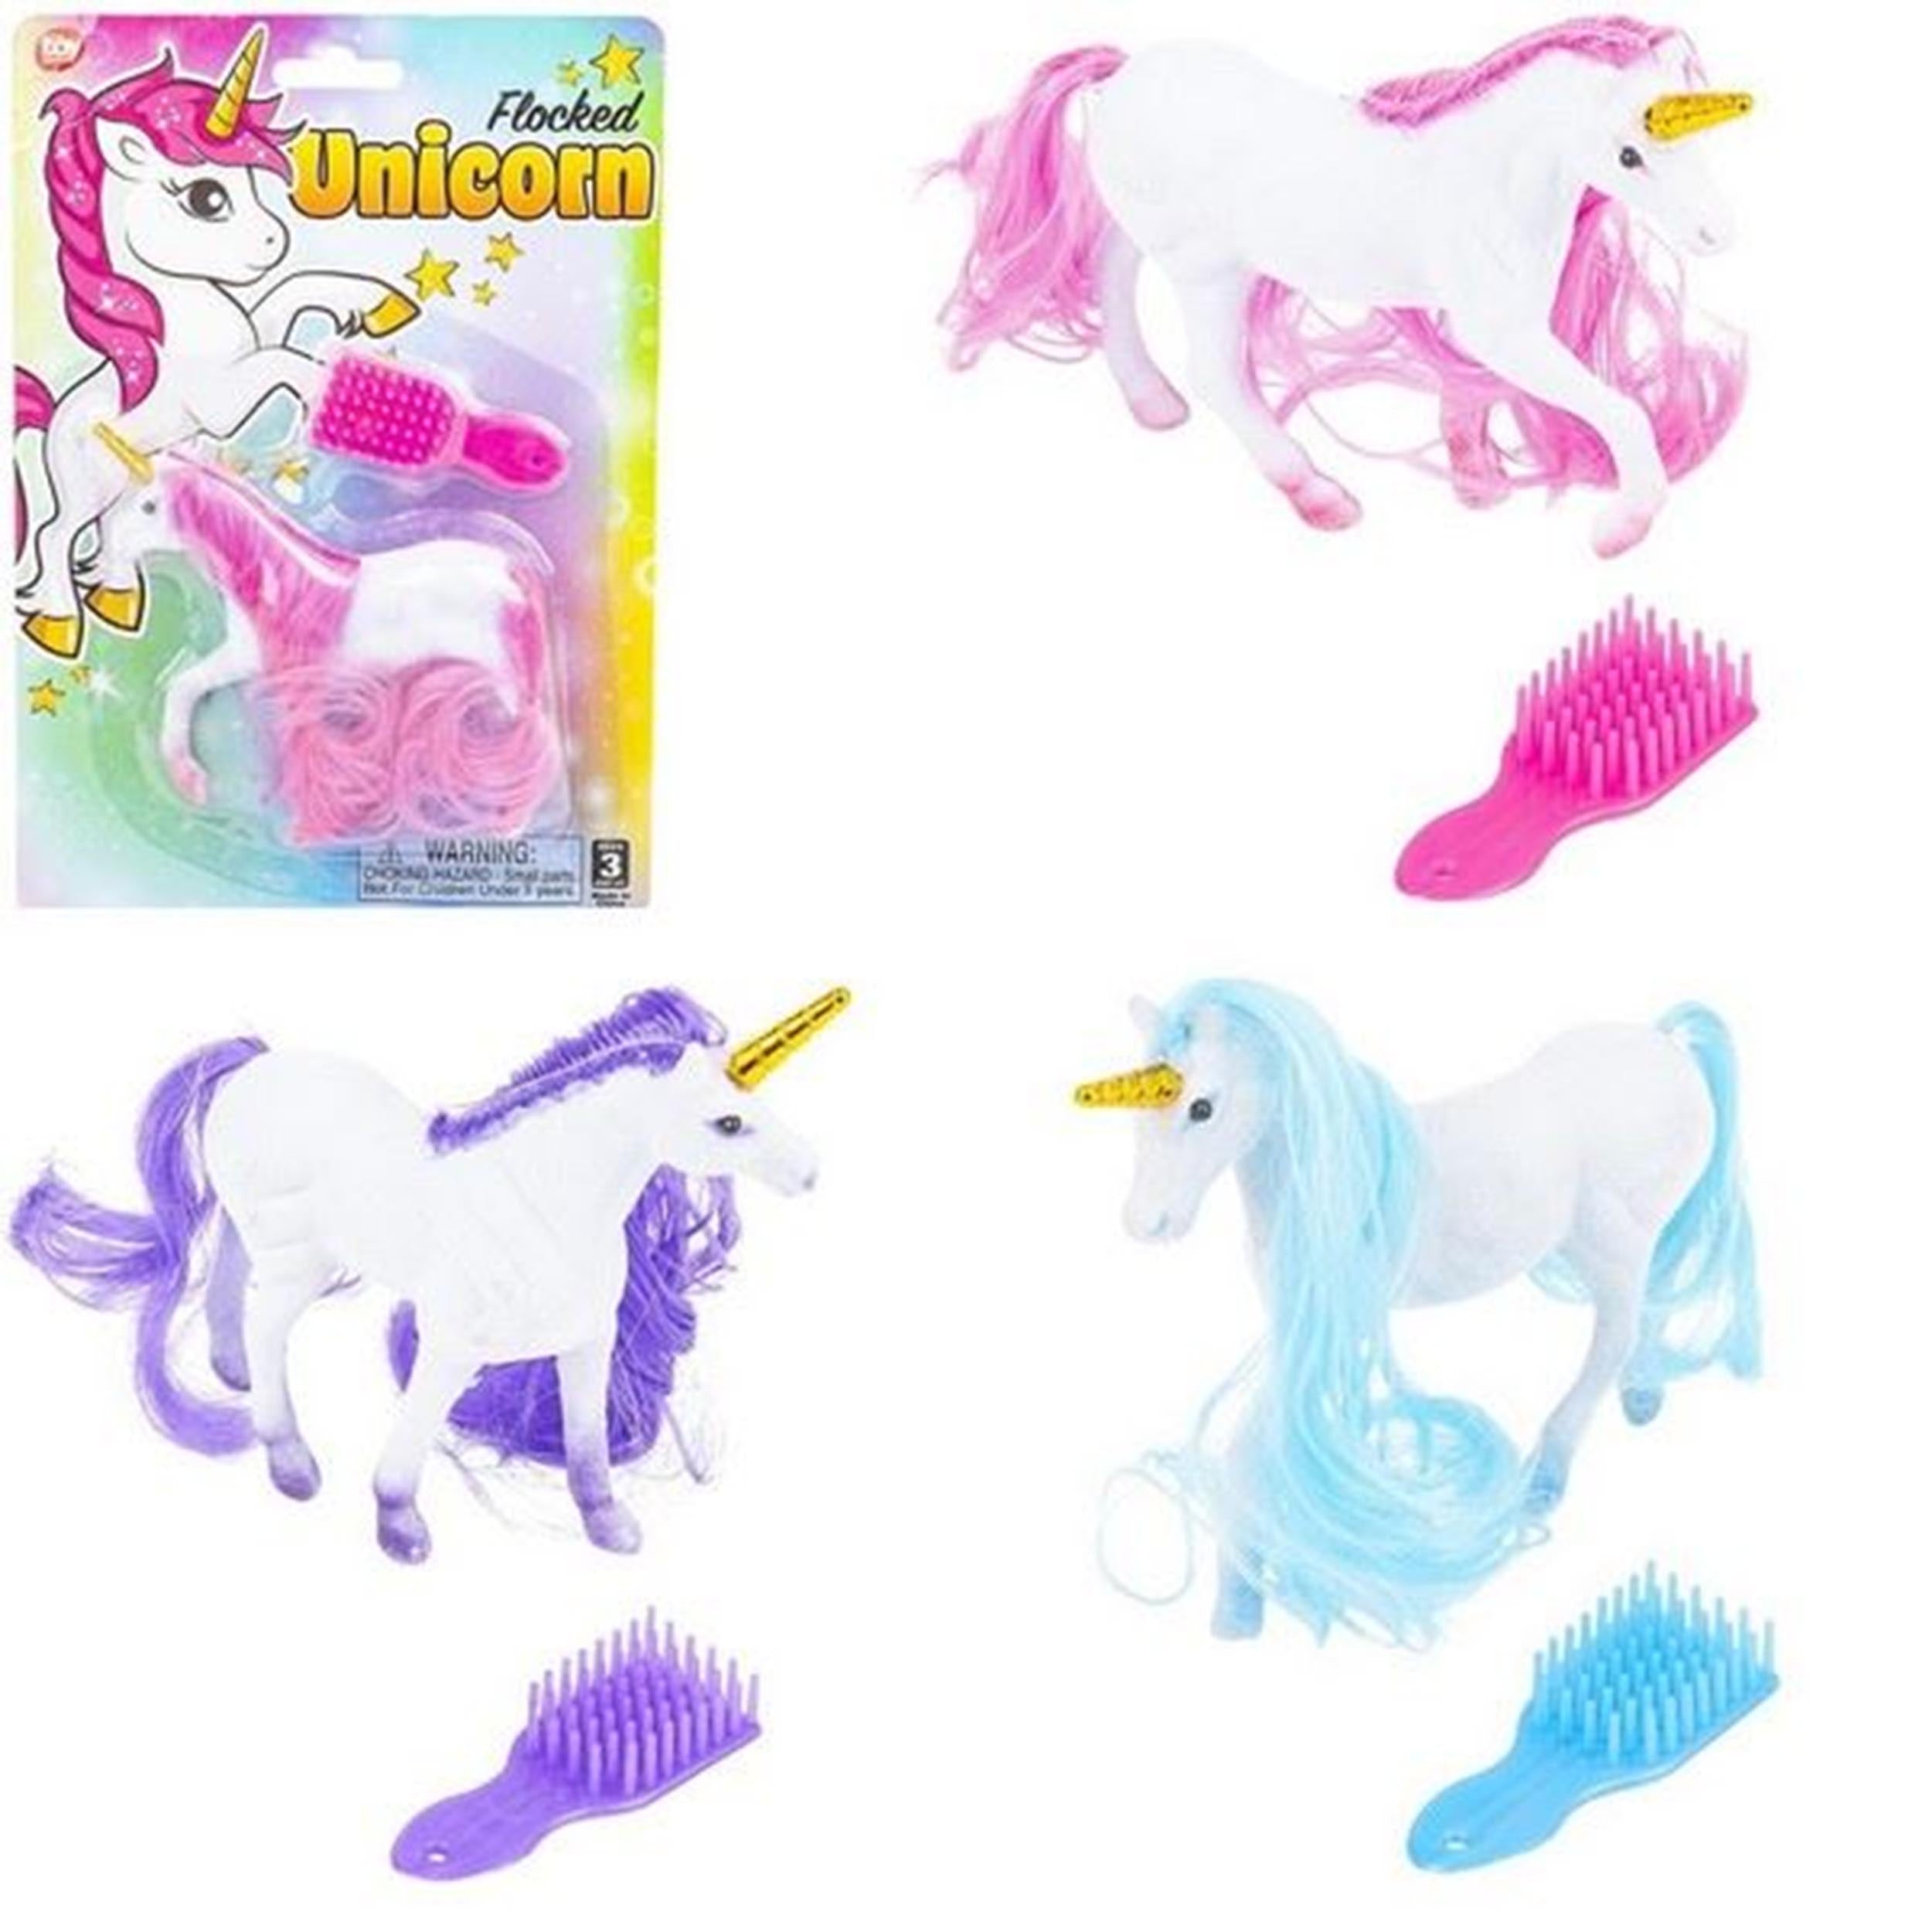 Flocked Unicorn Play Setkids toys (1 Dozen=$29.99)